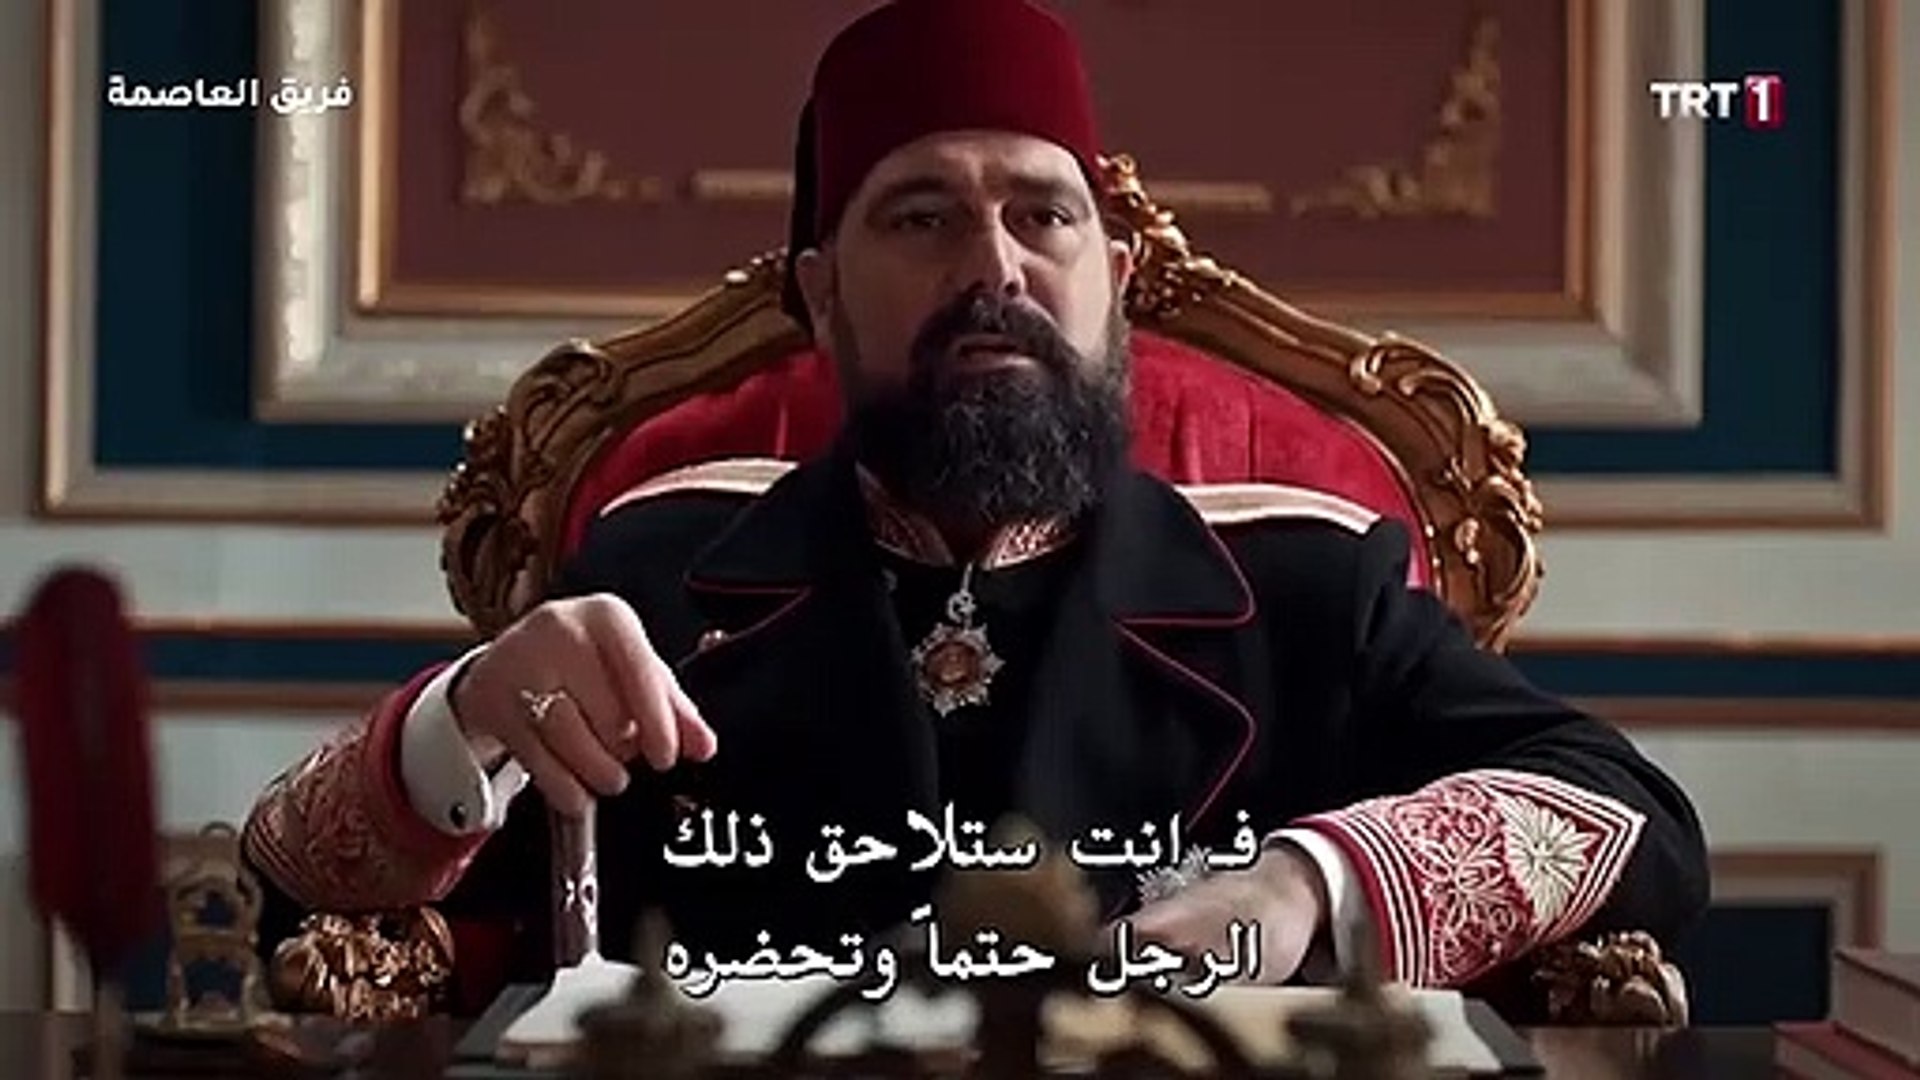 مسلسل السلطان عبد الحميد 130 الحلقة مترجم للعربيه Video Dailymotion